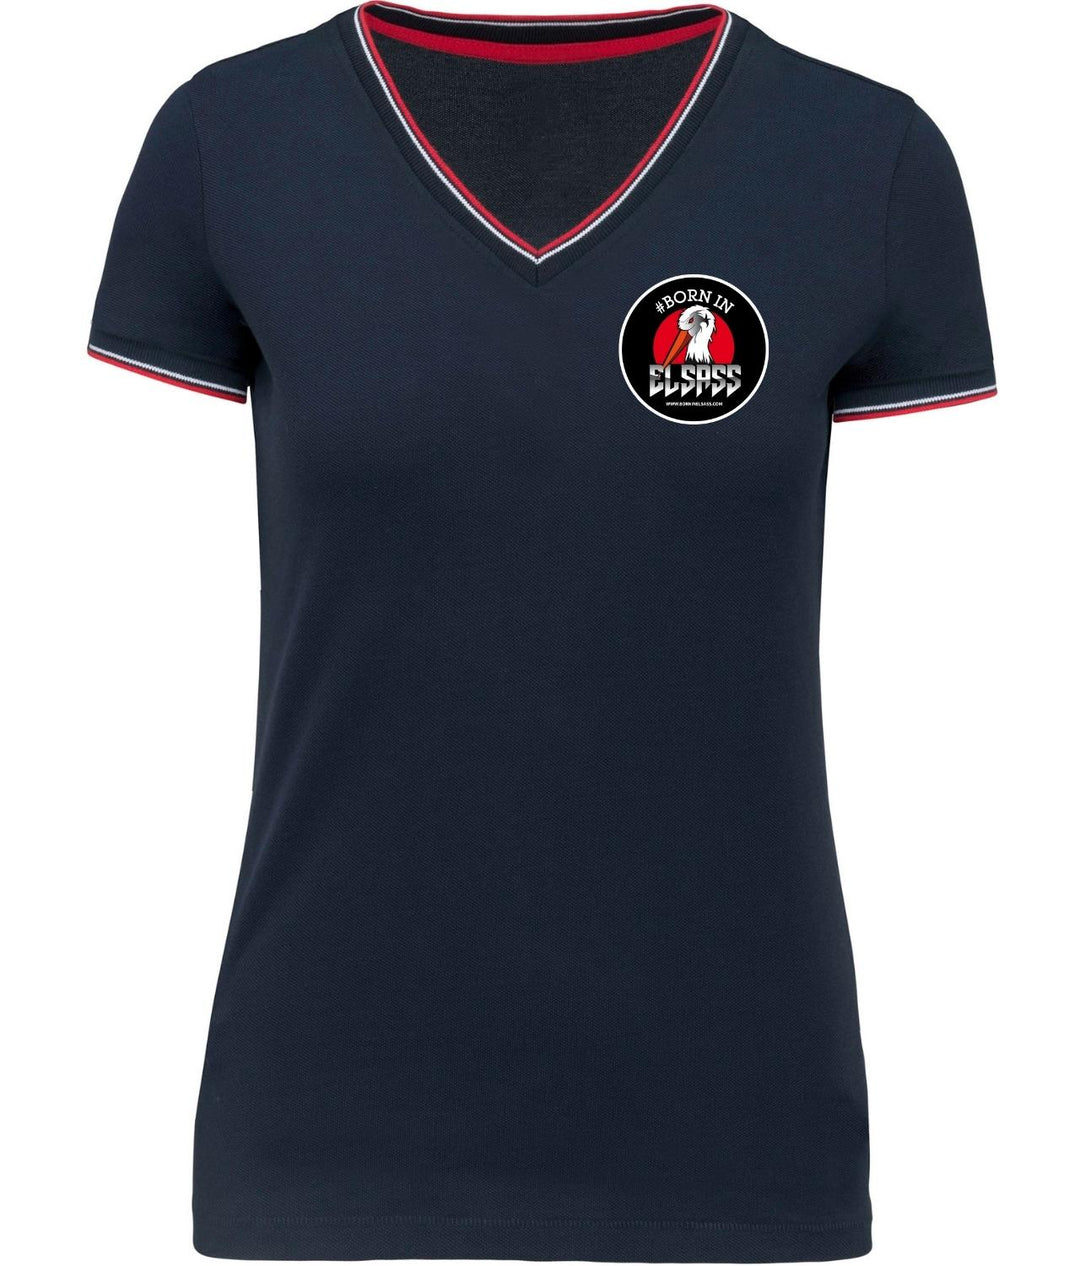 T-Shirt Col V femme - Maille piquée - 100% coton de Born In Elsass